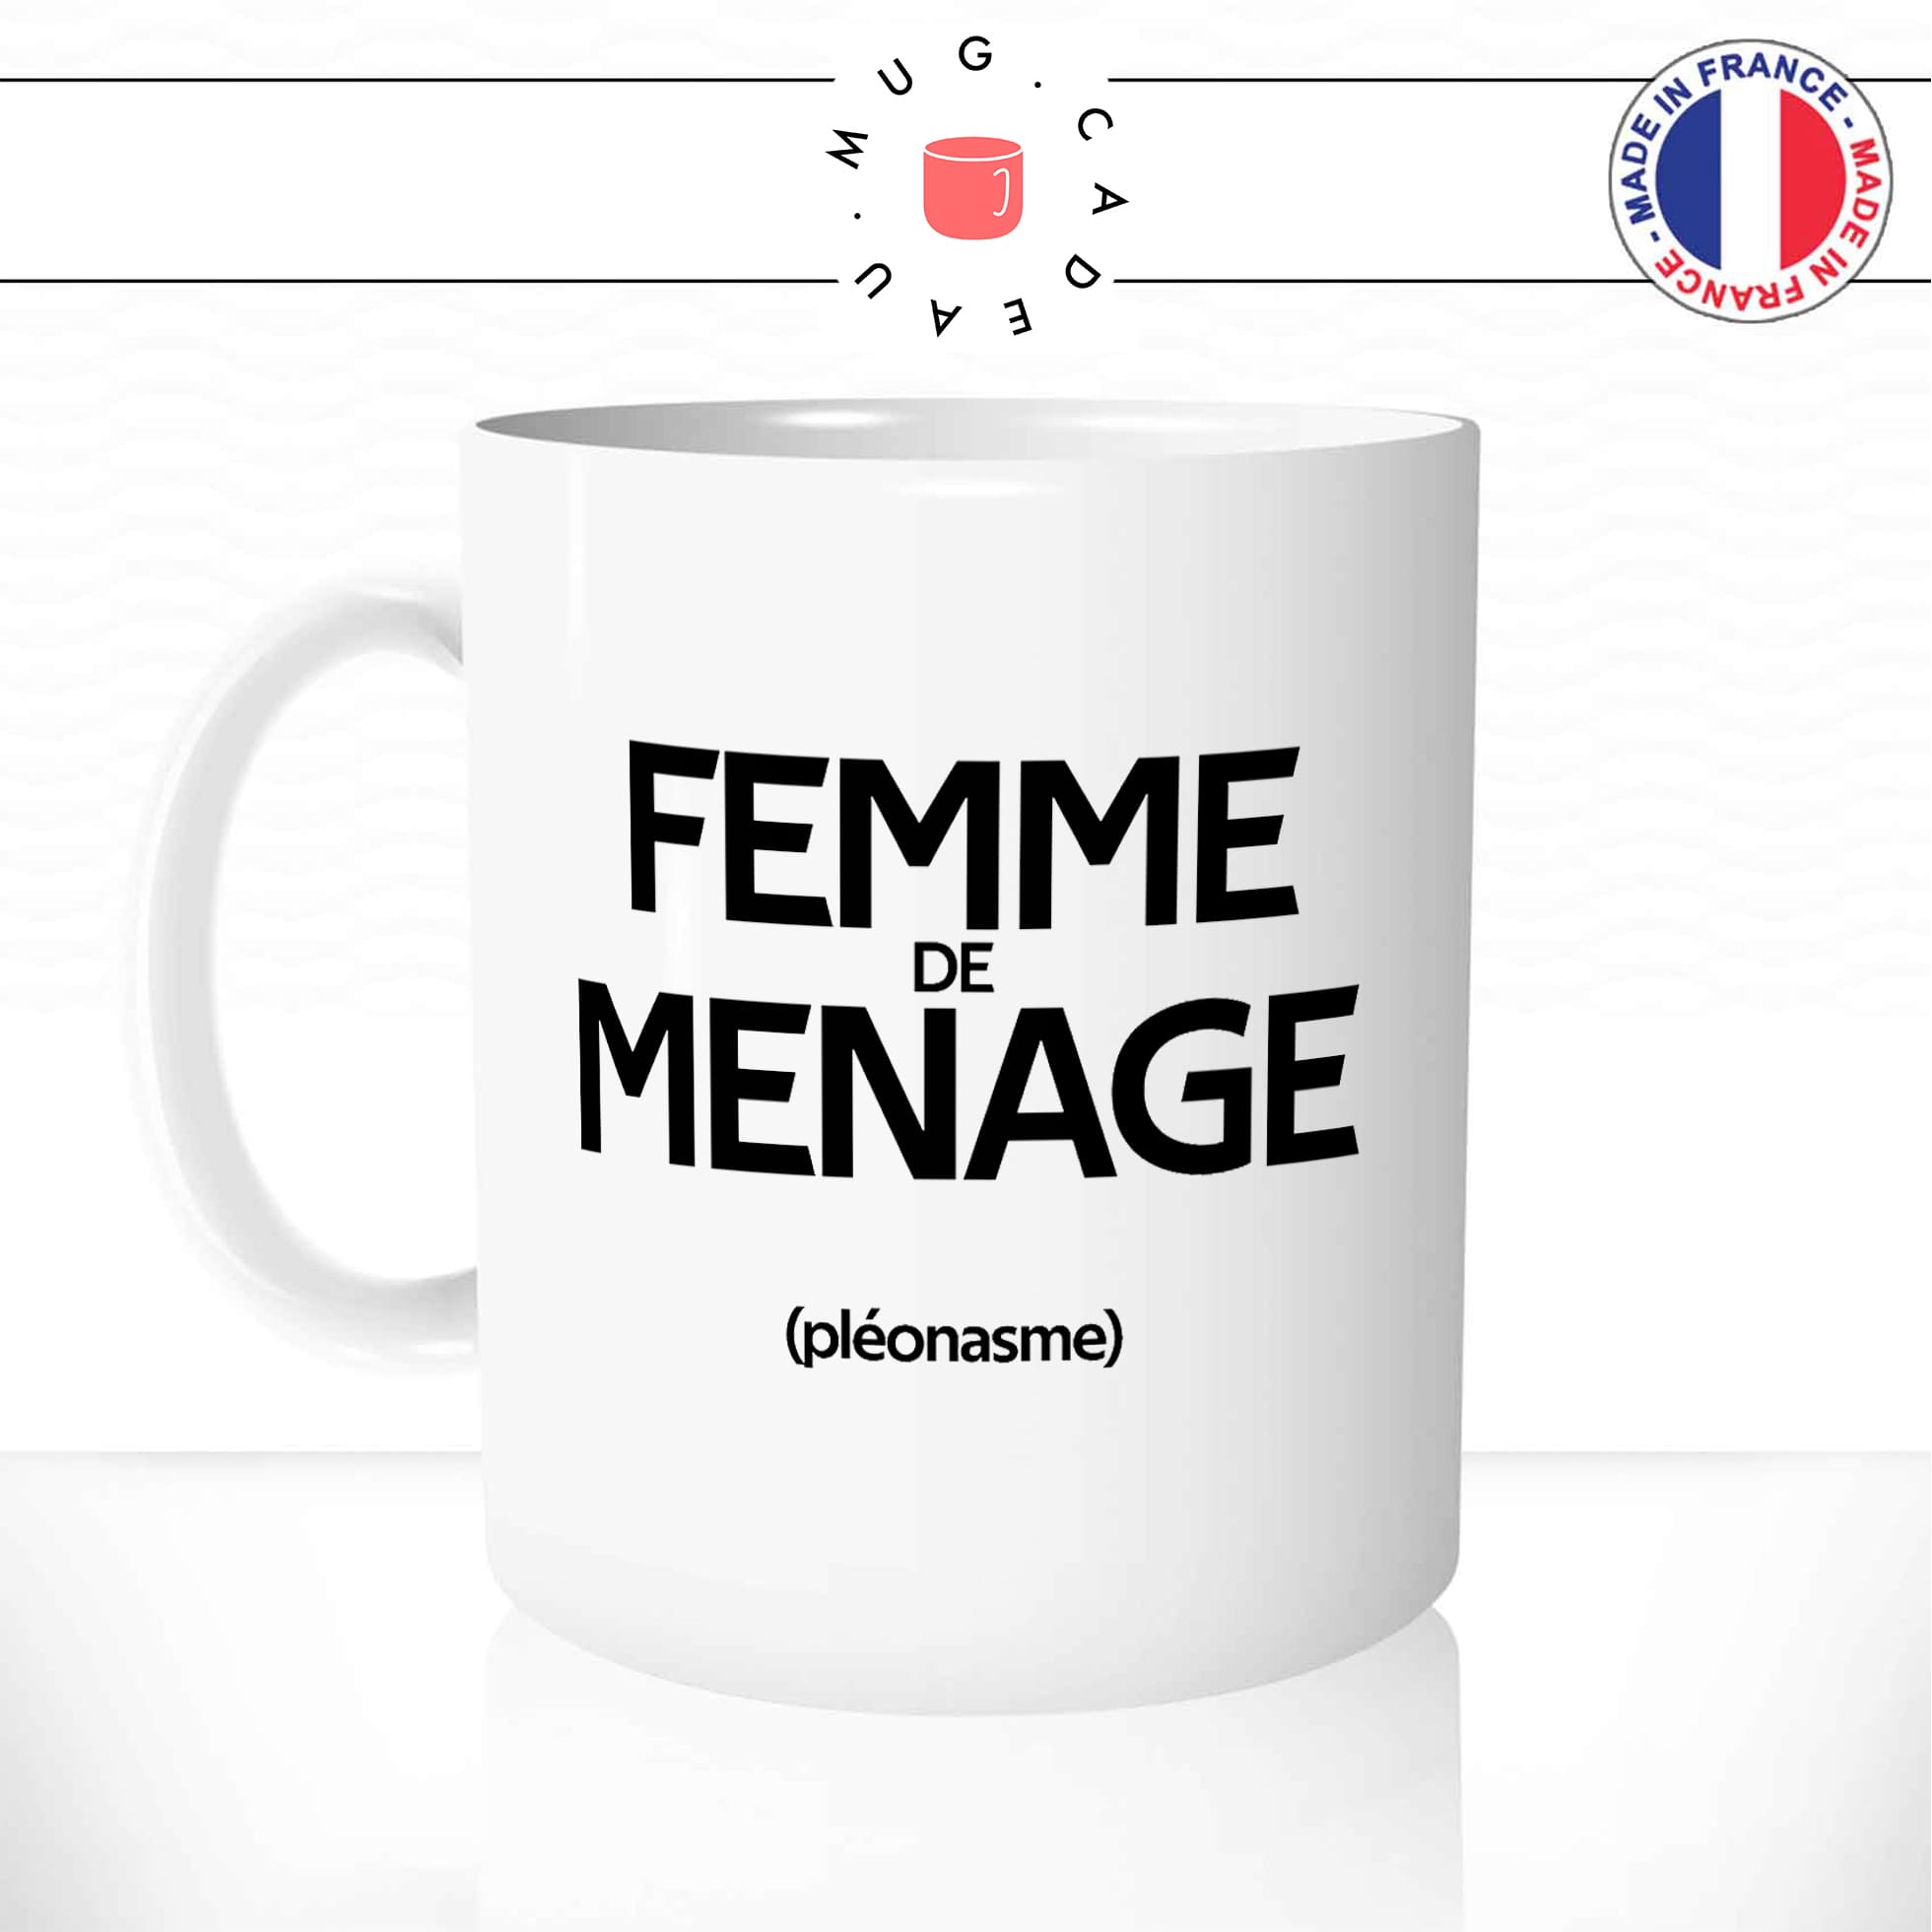 mug-tasse-blanc-femme-de-ménage-pénible-couple-pléonasme-couzine-synonymes-copine-humour-fun-idée-cadeau-originale-cool